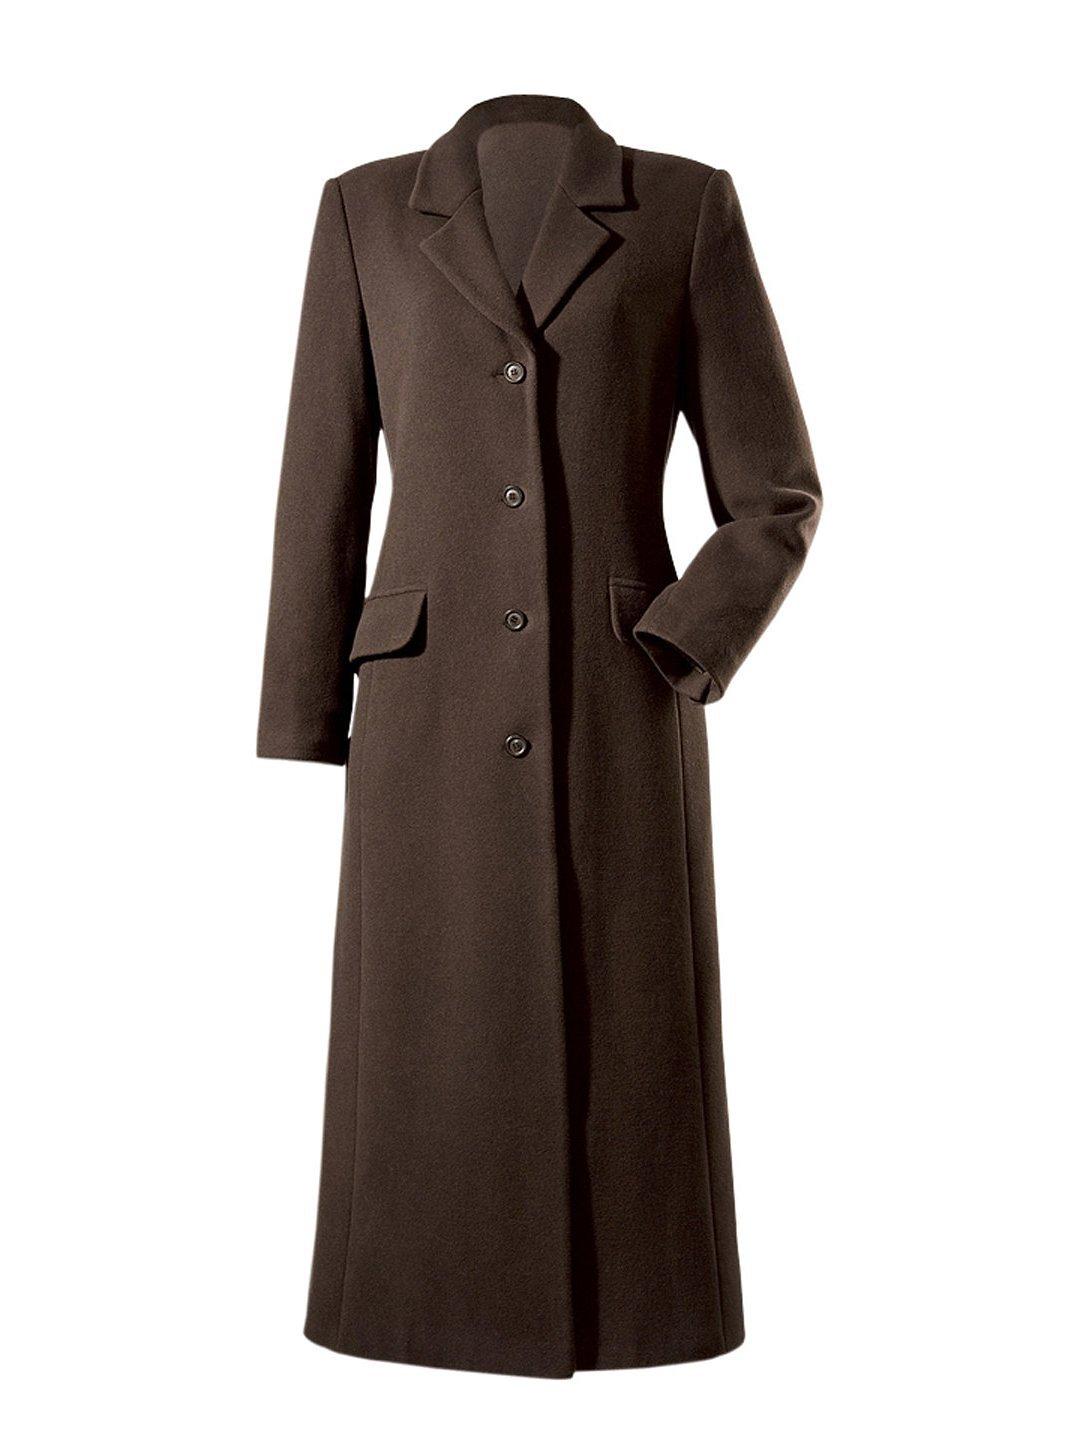 Купить приталенное пальто. Женское пальто. Коричневое пальто женское. Длинное пальто. Длинное приталенное пальто.